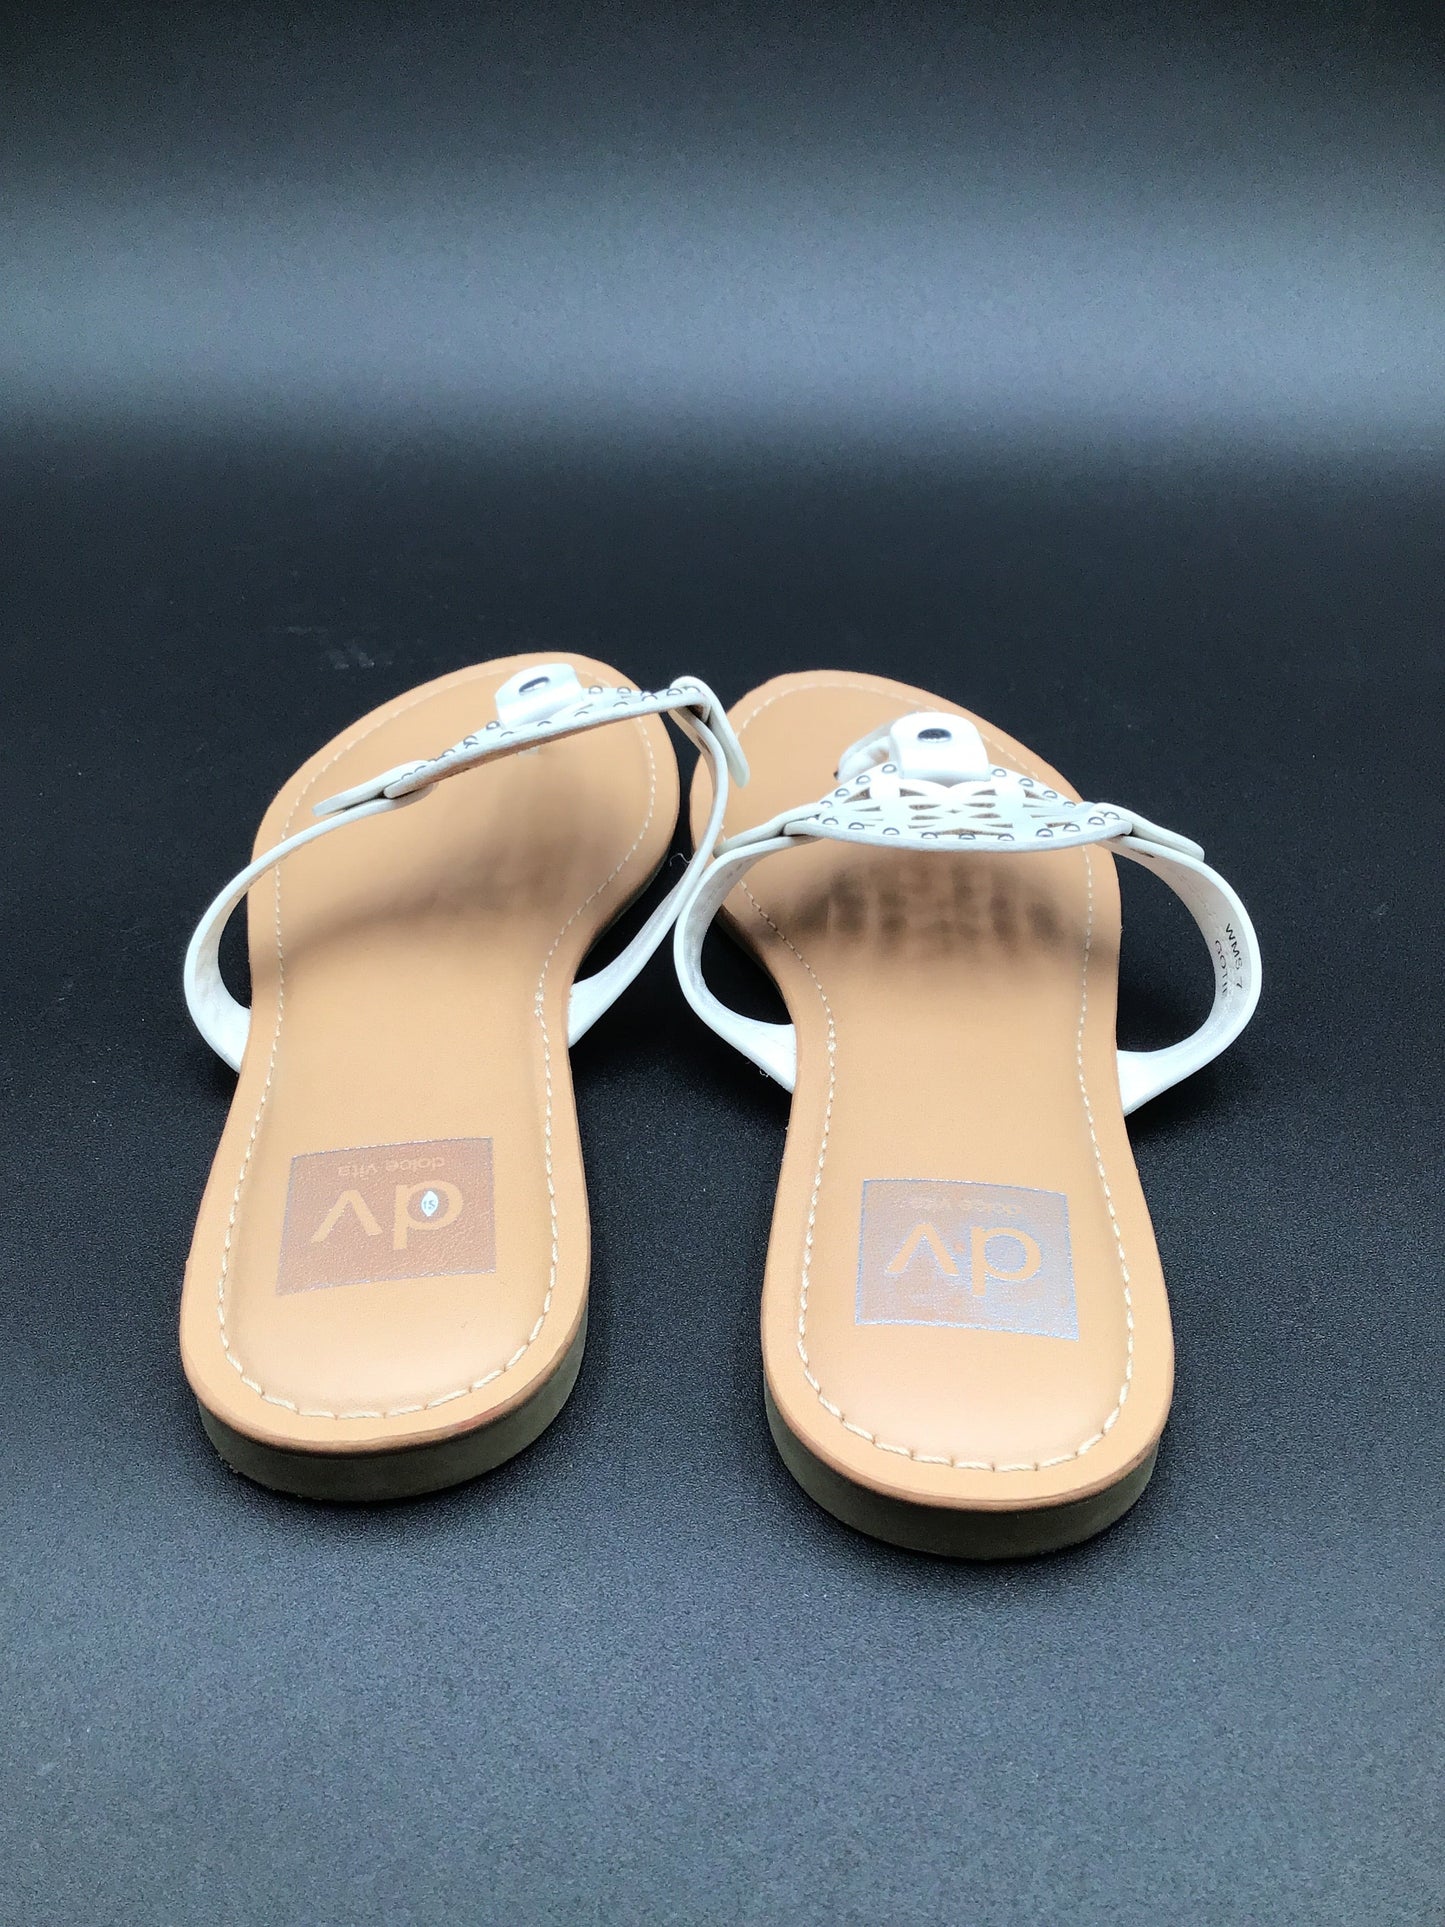 White Sandals Flats Dolce Vita, Size 7